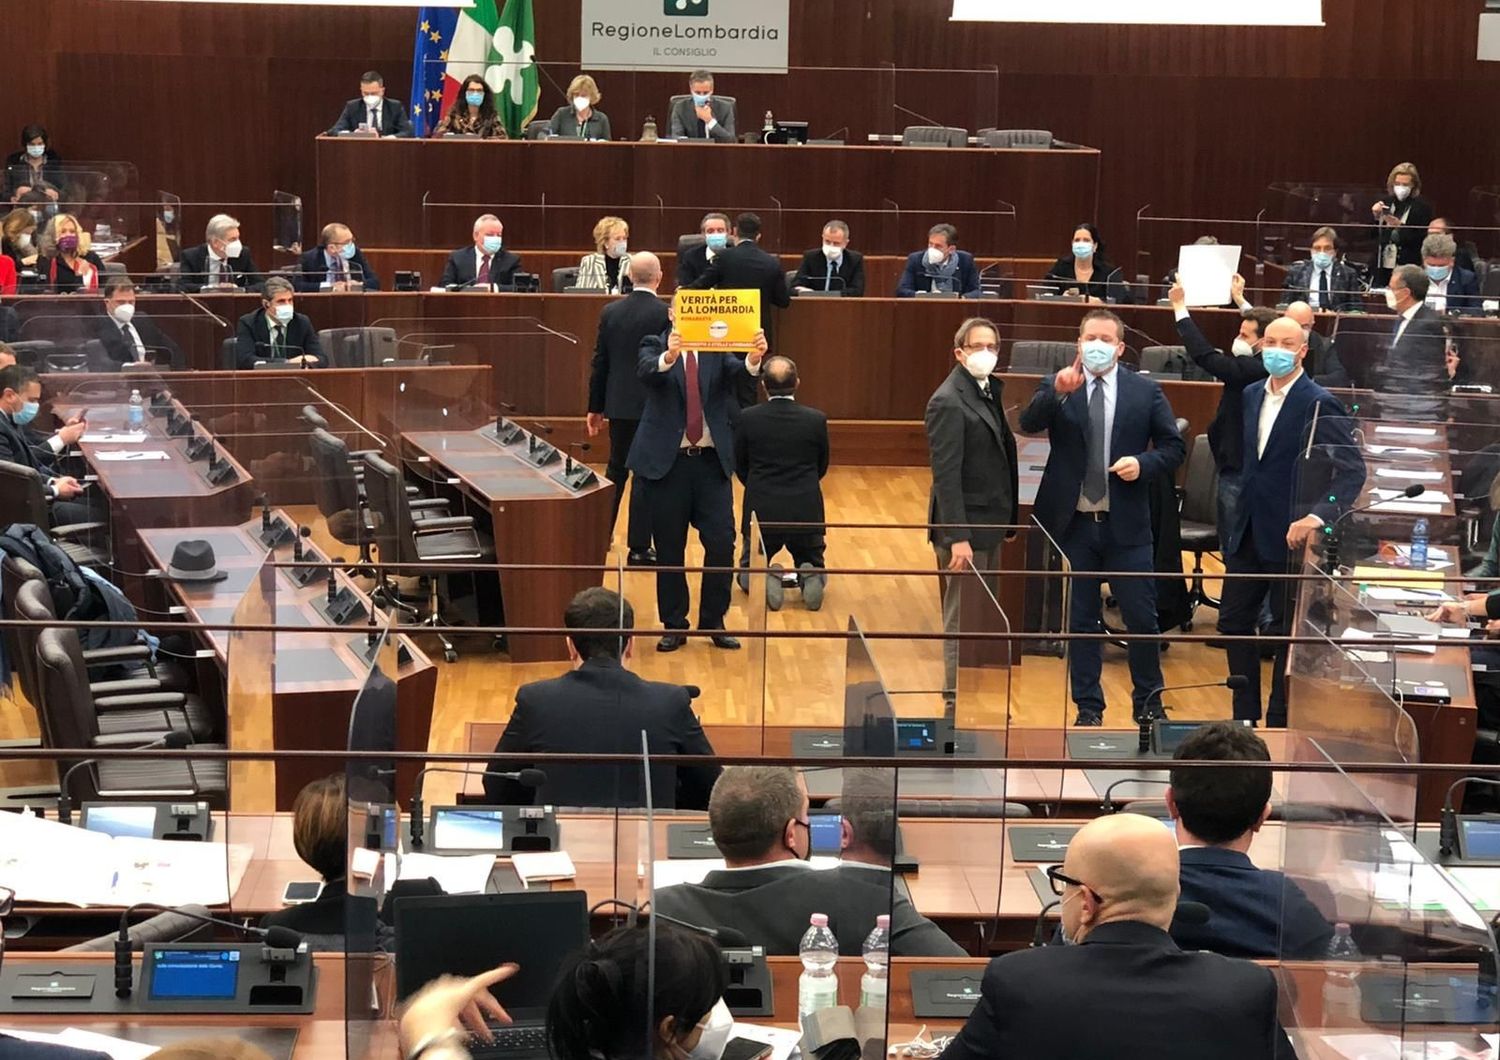 Il consigliere di +Europa, Michele Usuelli, inginocchiato 'polemicamente' davanti al governatore Fontana